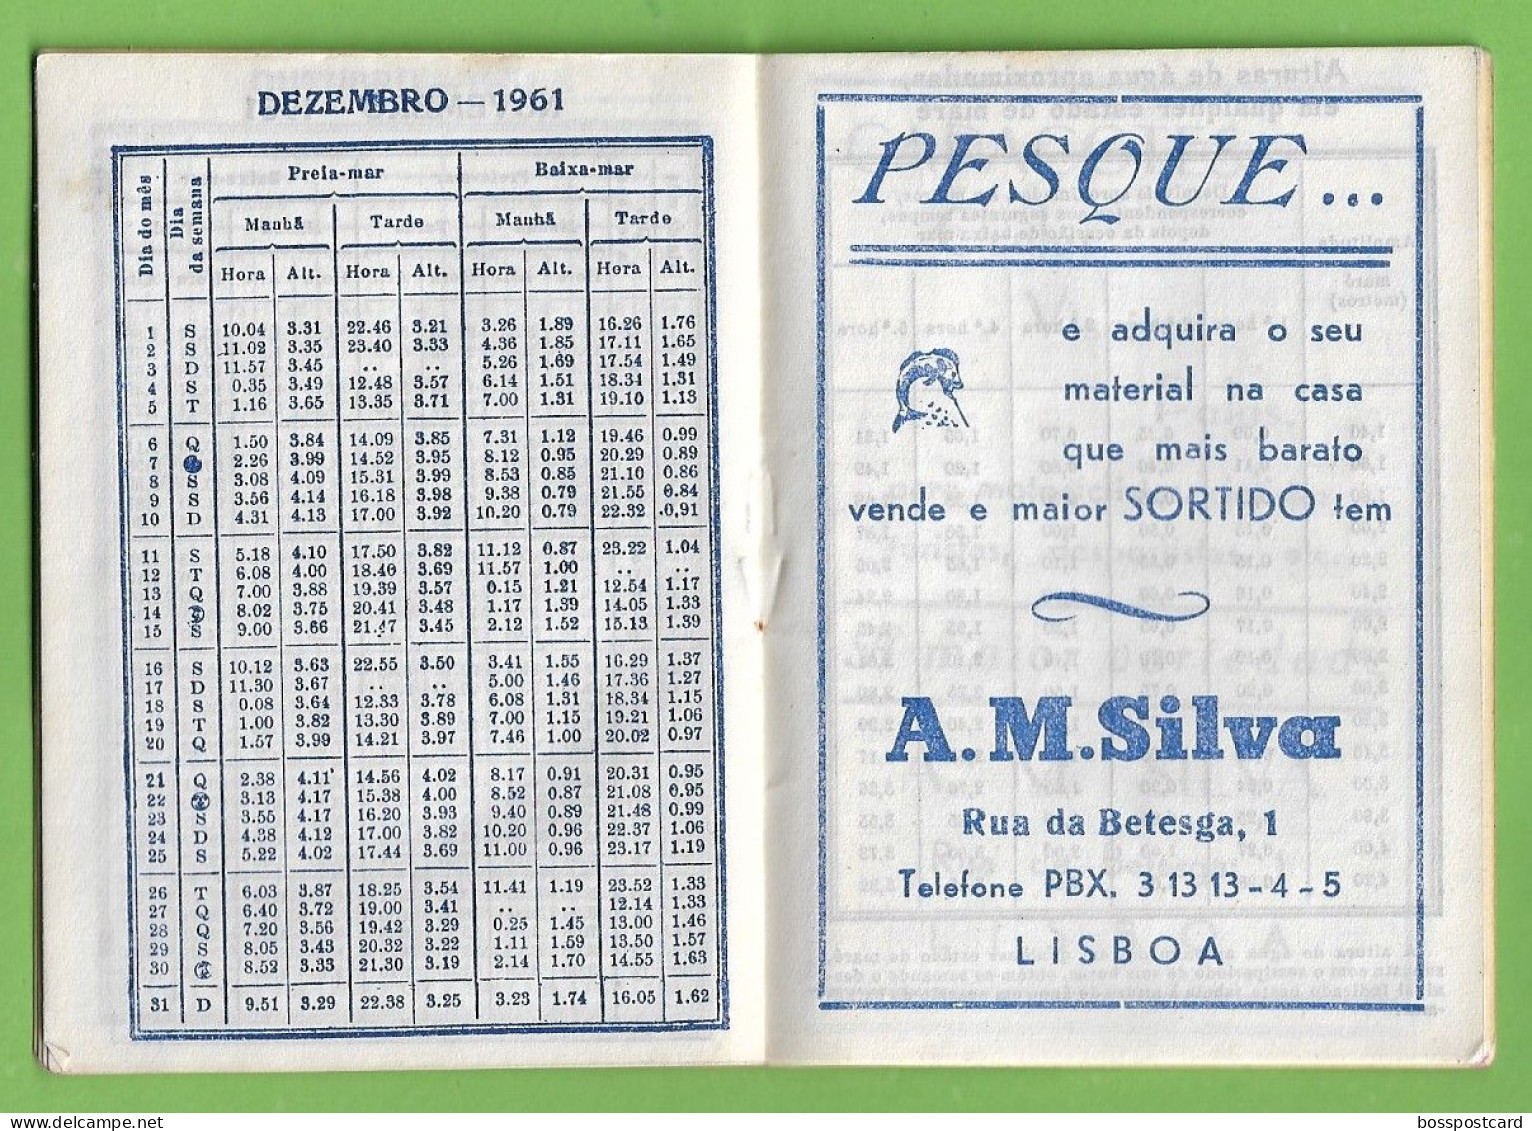 Lisboa - Calendário de 1961 de A. M. Silva - Portugal